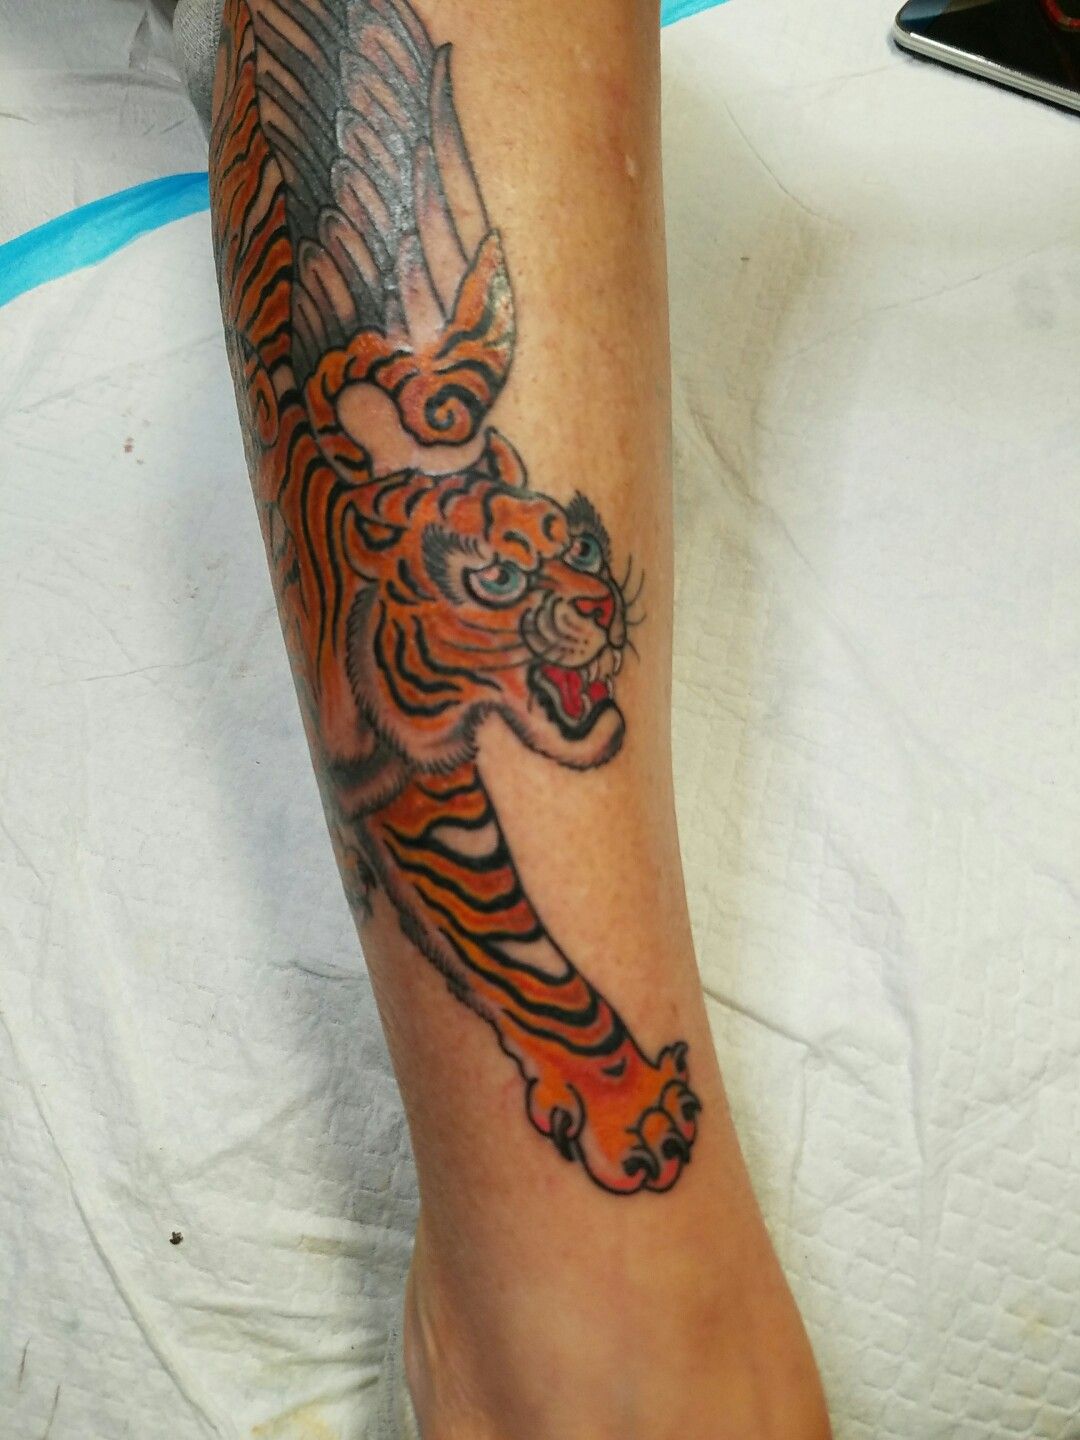 derek mummert share tiger with wings tattoo photos